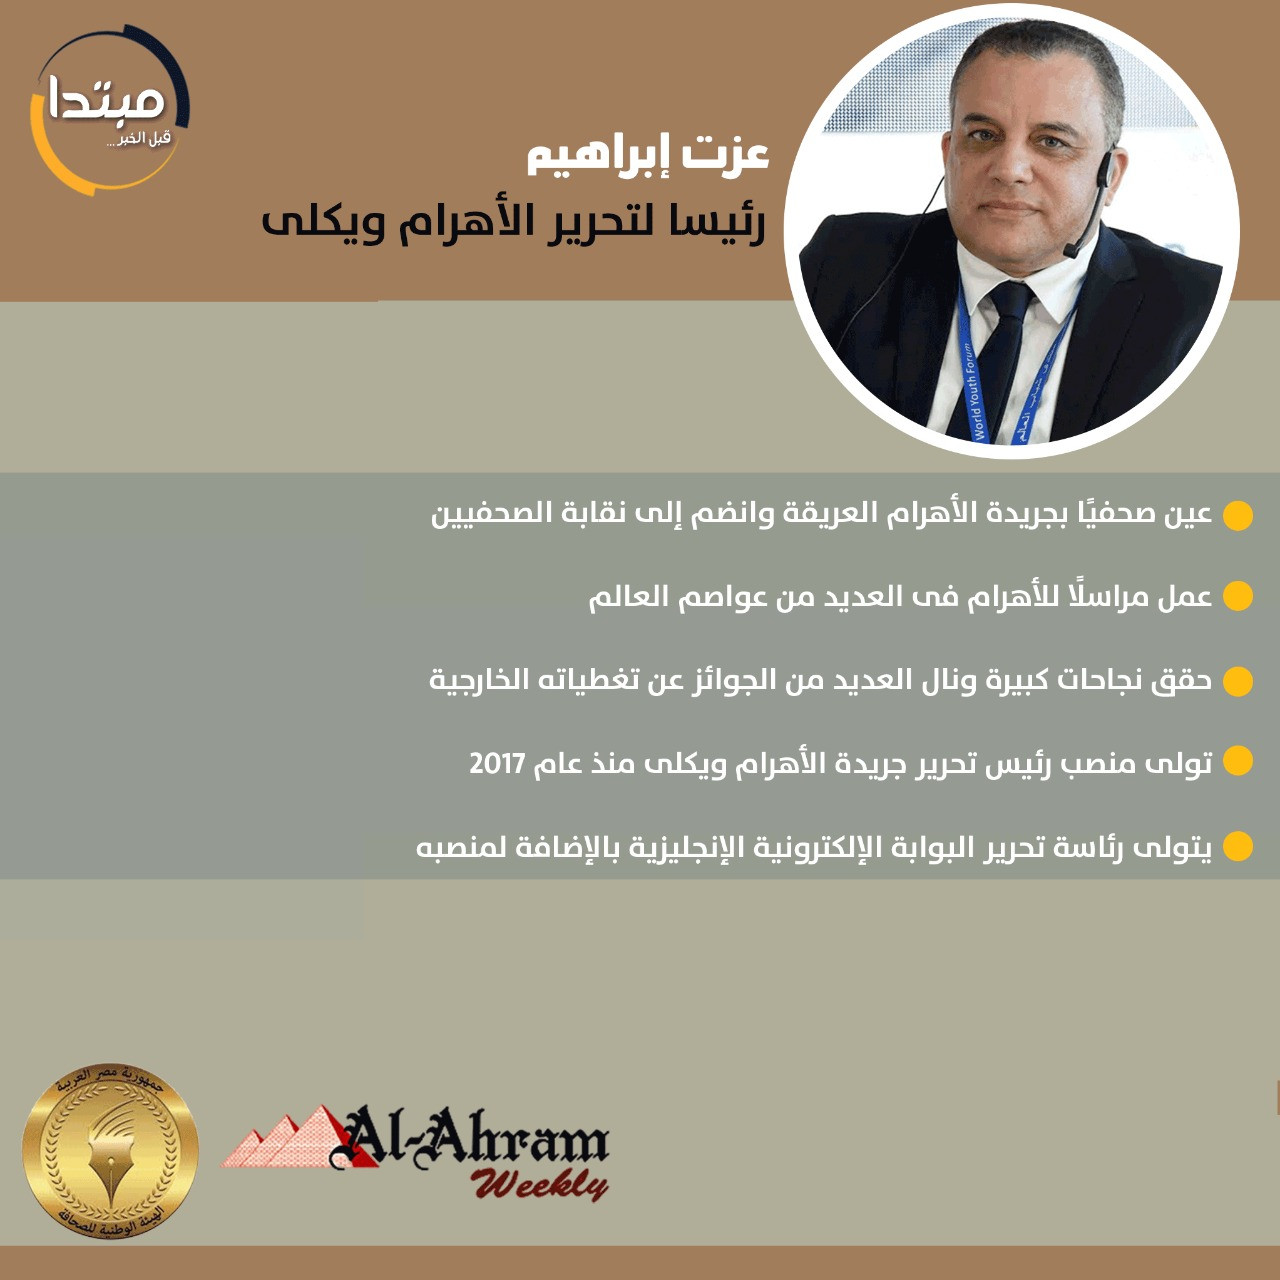 5 معلومات عن عزت إبراهيم رئيس تحرير الأهرام ويكلى | مبتدا